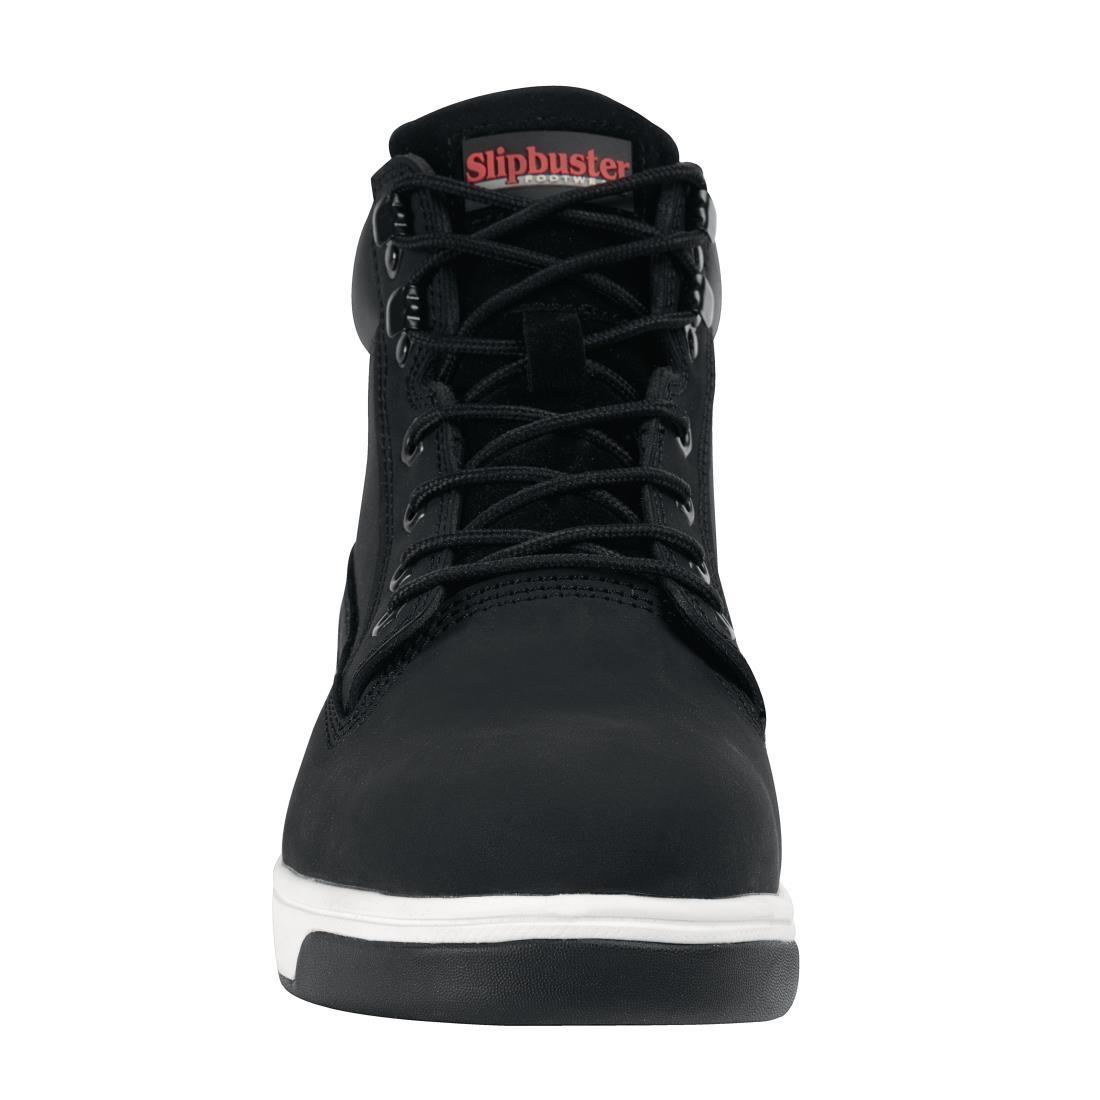 Slipbuster Sneaker Boots Black 43 - BB422-43  - 3